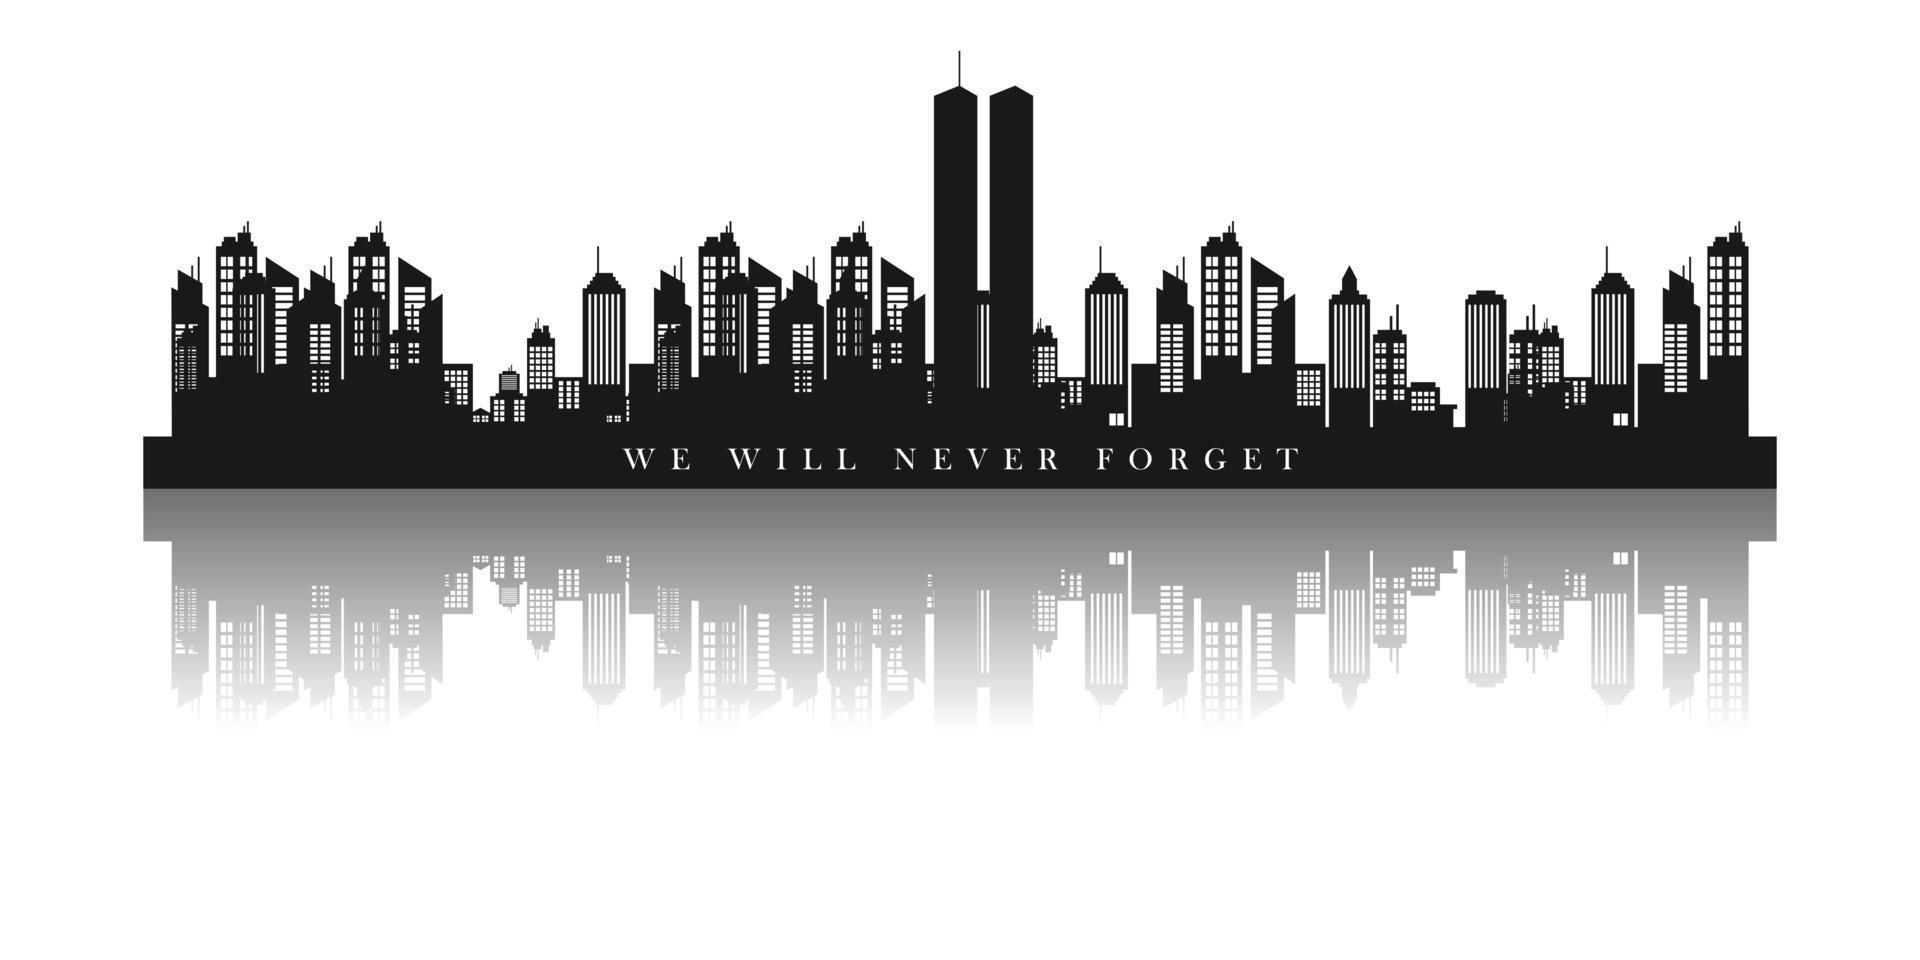 twin towers in de skyline van new york. 11 september 2001 vectoraffiche. patriot day, 11 september, zullen we nooit vergeten vector